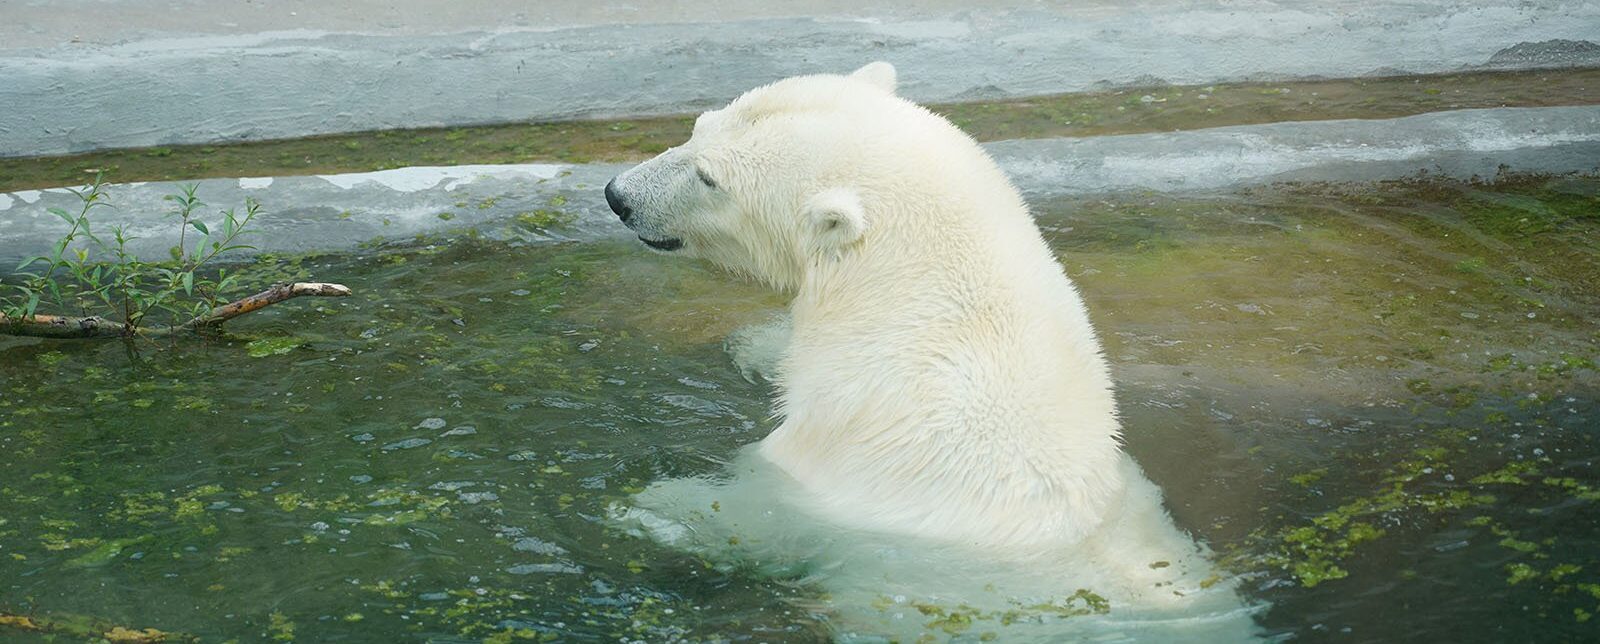 Медведь все делает по собственному желанию. Фото: сайт мэра Москвы